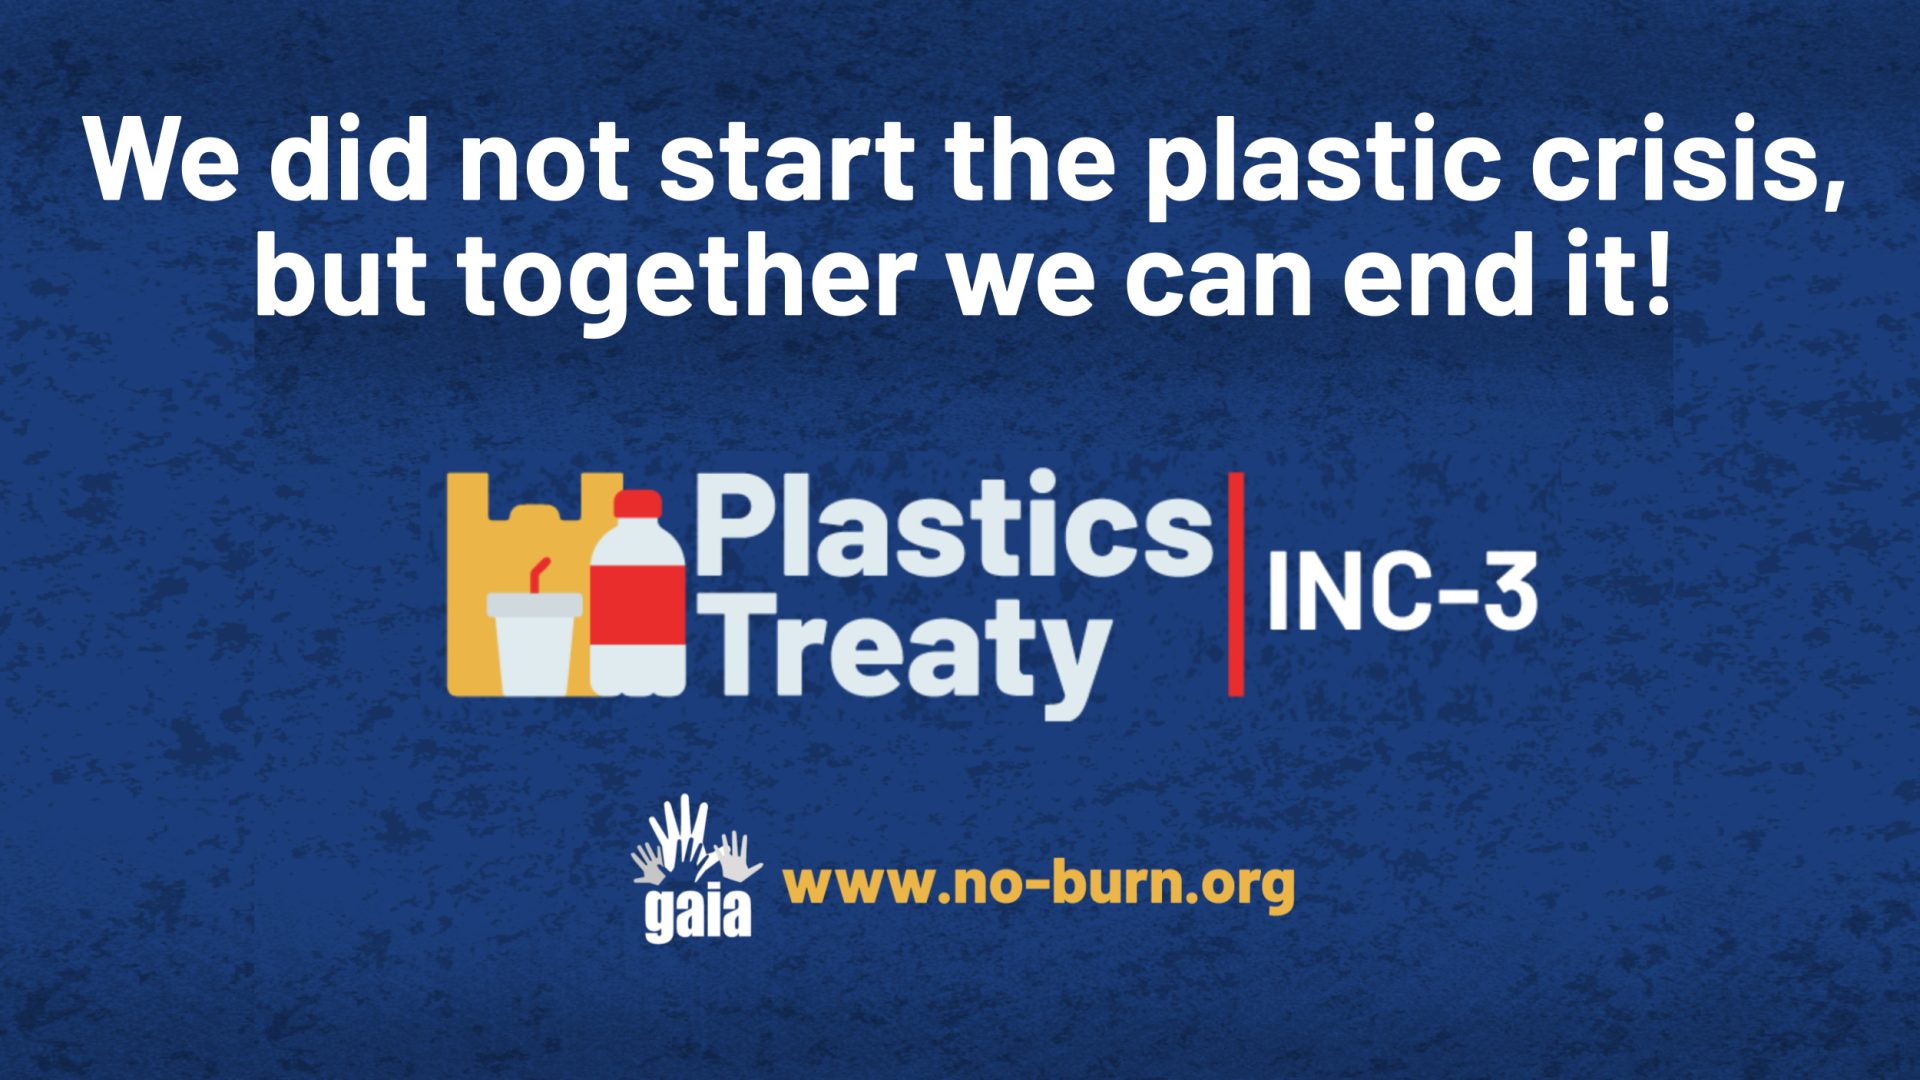 Tratado de Plásticos interior INC3: Se quitaron las máscaras, ¿se quitarán también los guantes? imagen de banner